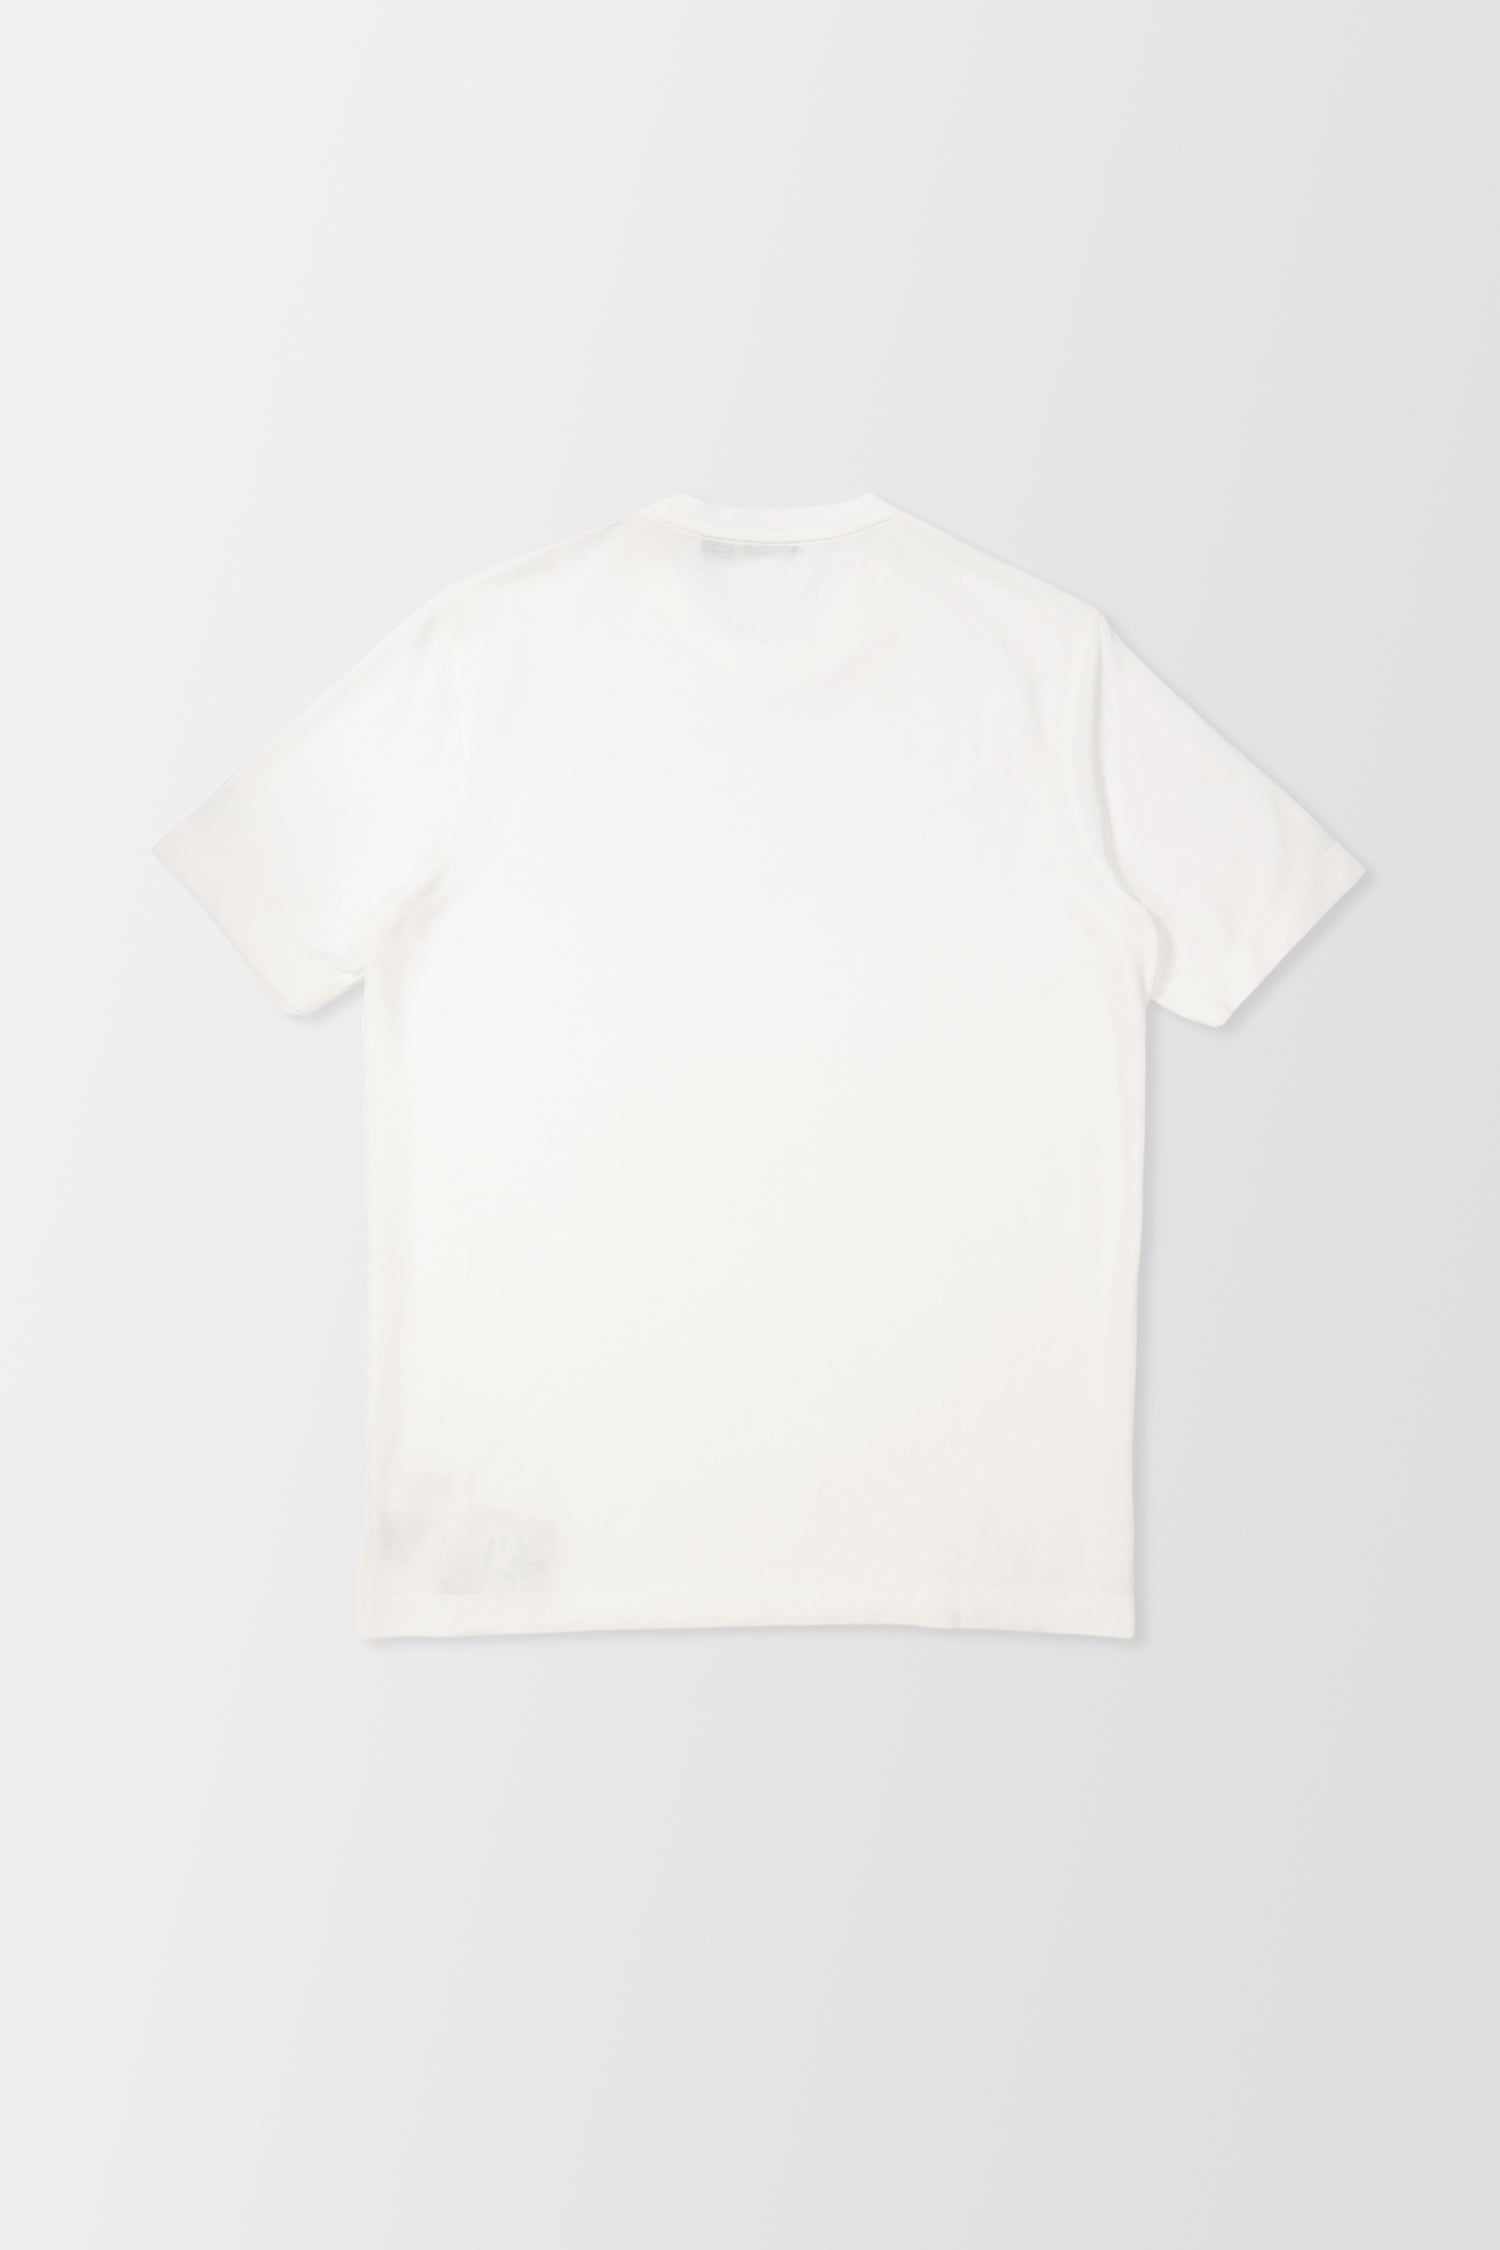 Zanone White T-Shirt